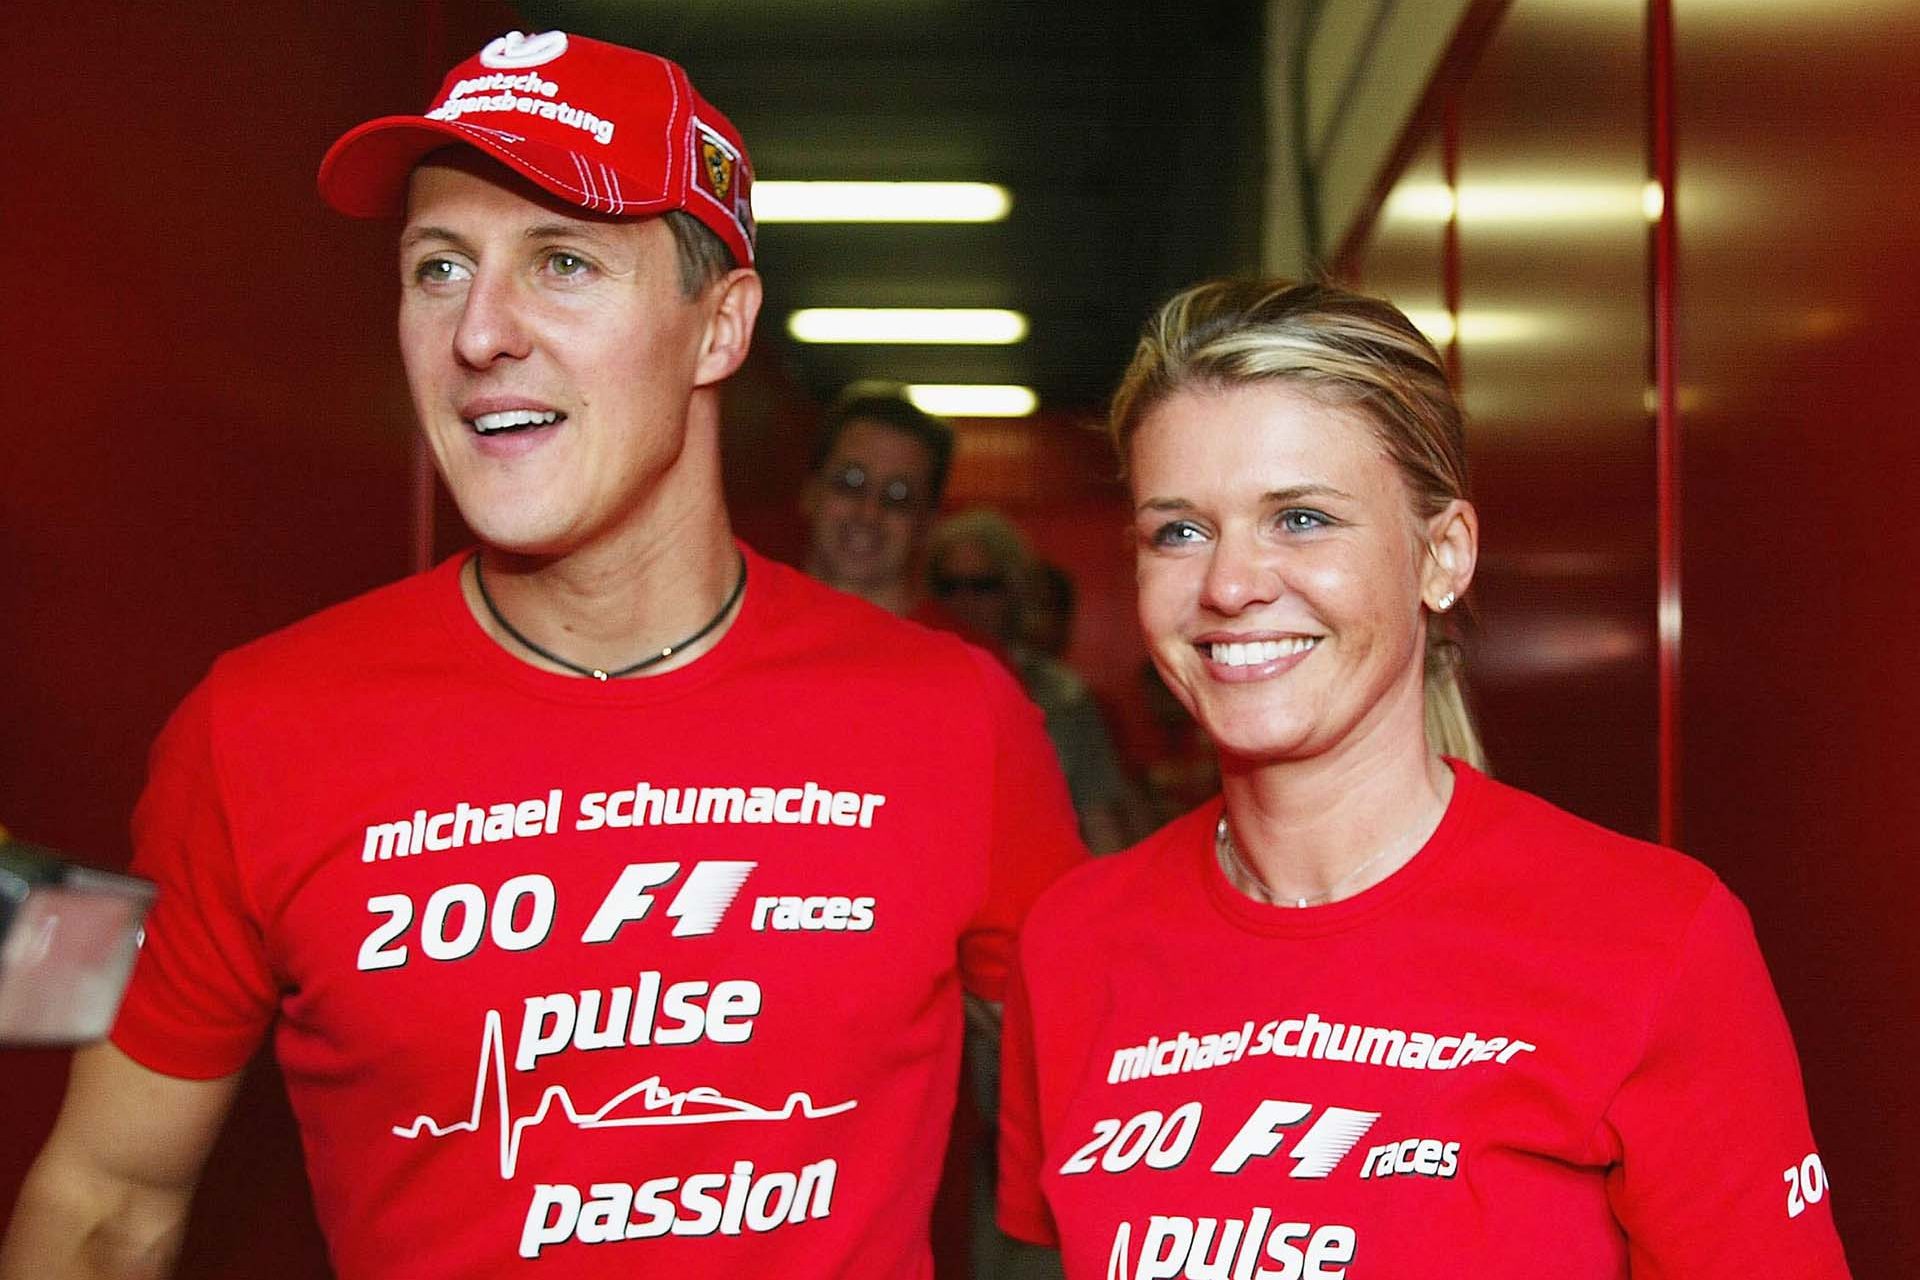 Der lebensverändernde Entschluss, den Michael Schumachers Frau treffen musste